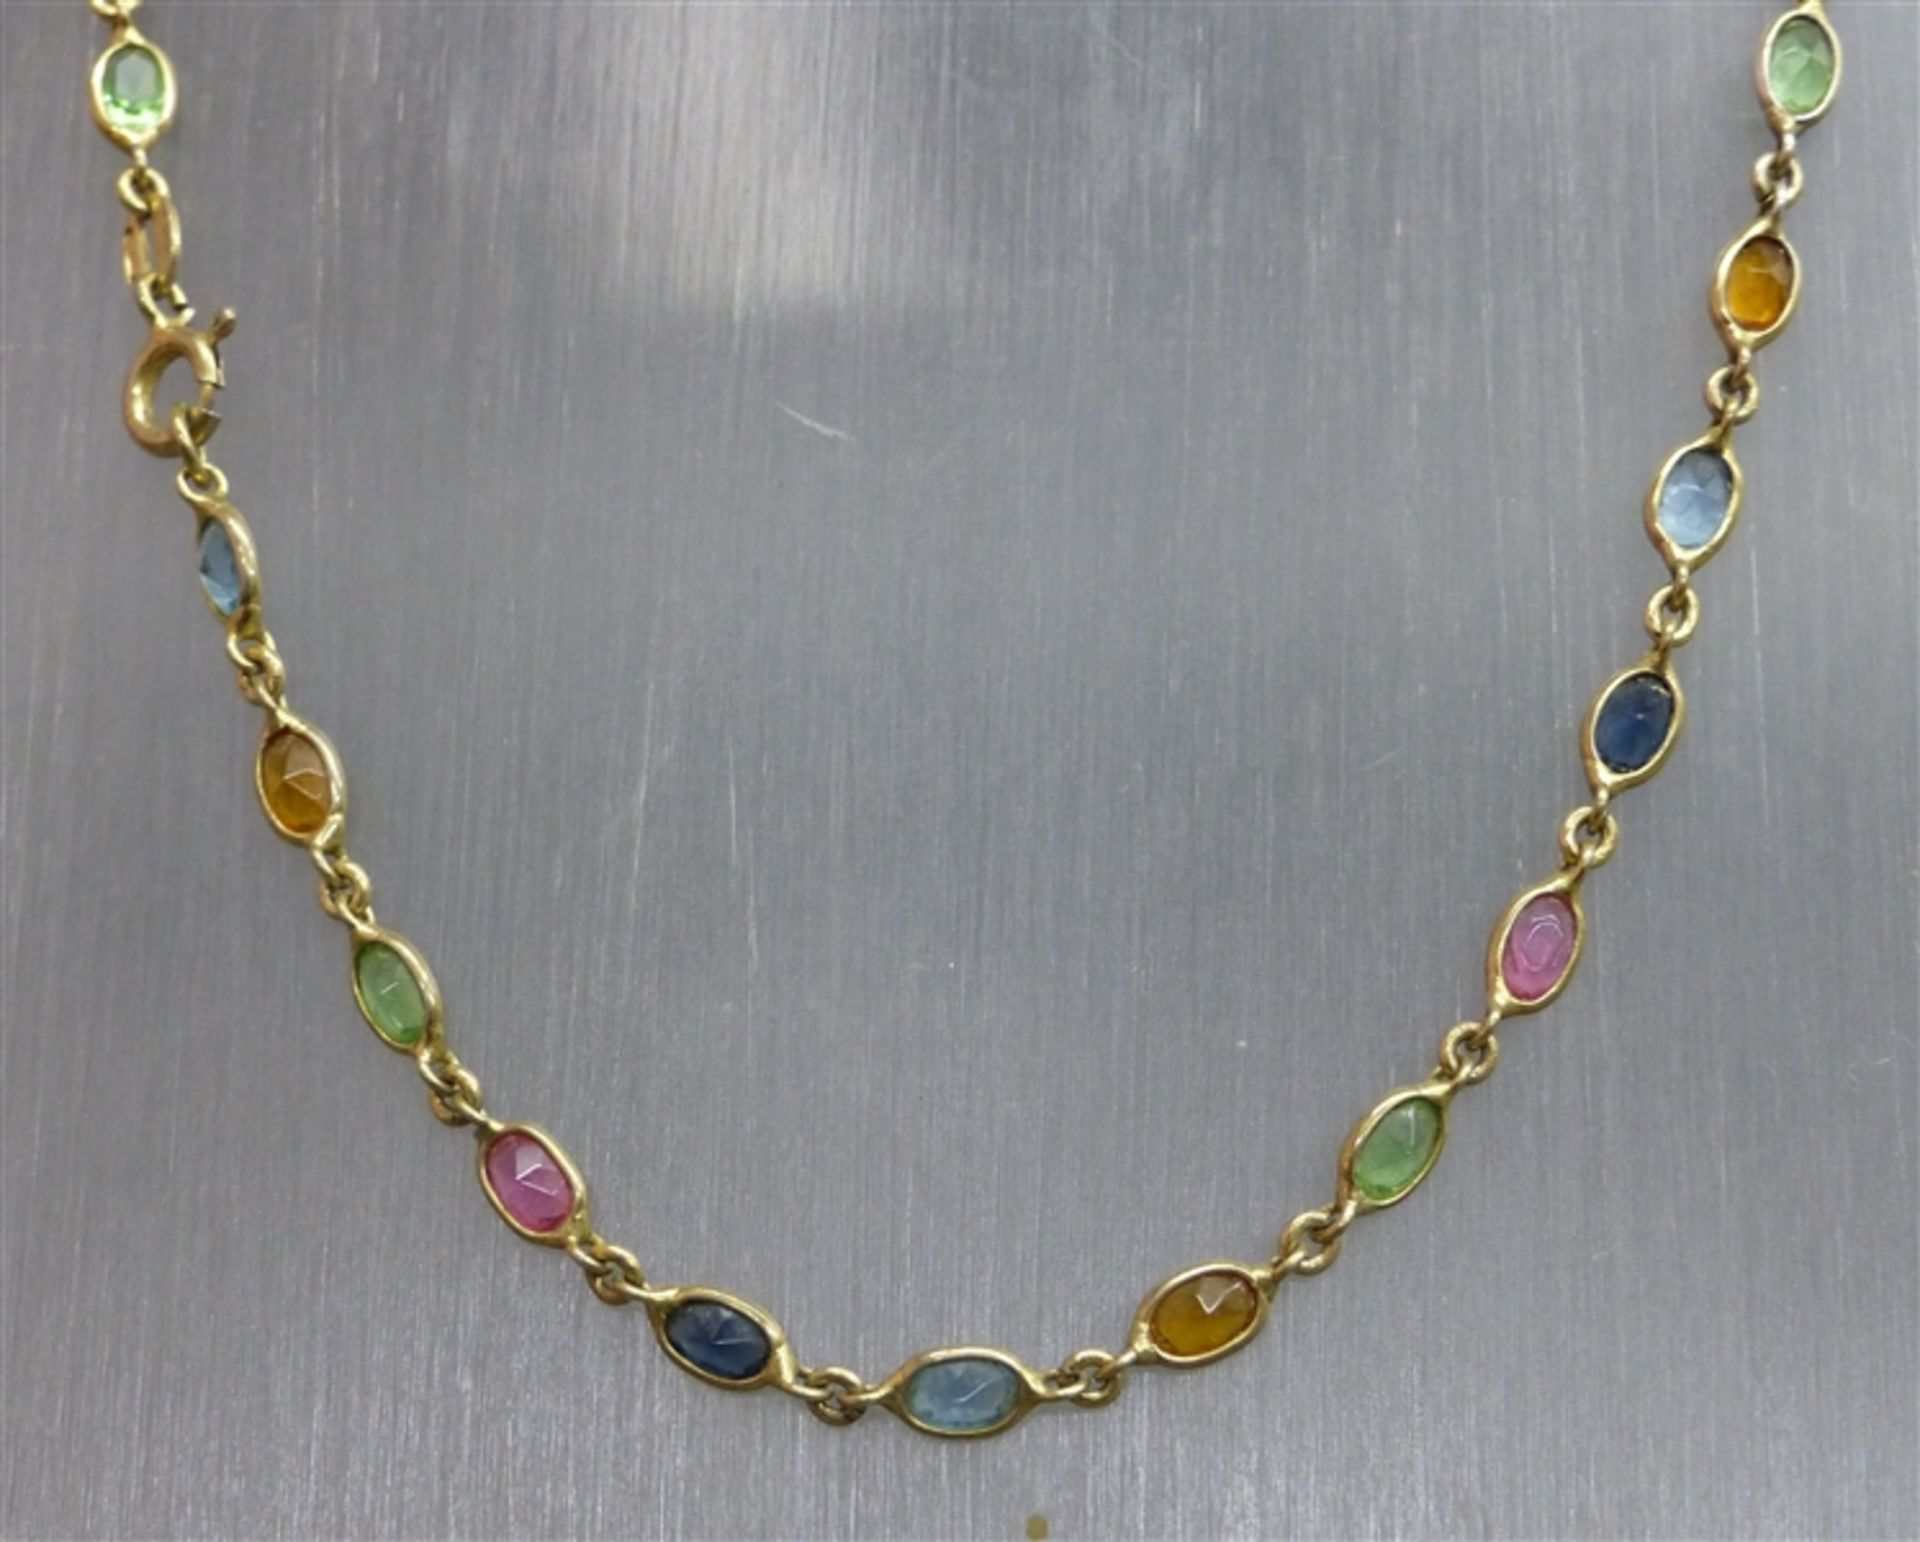 Halskette 925er Silber, vergoldet, verschieden farbige Glassteine, l 40 cm,